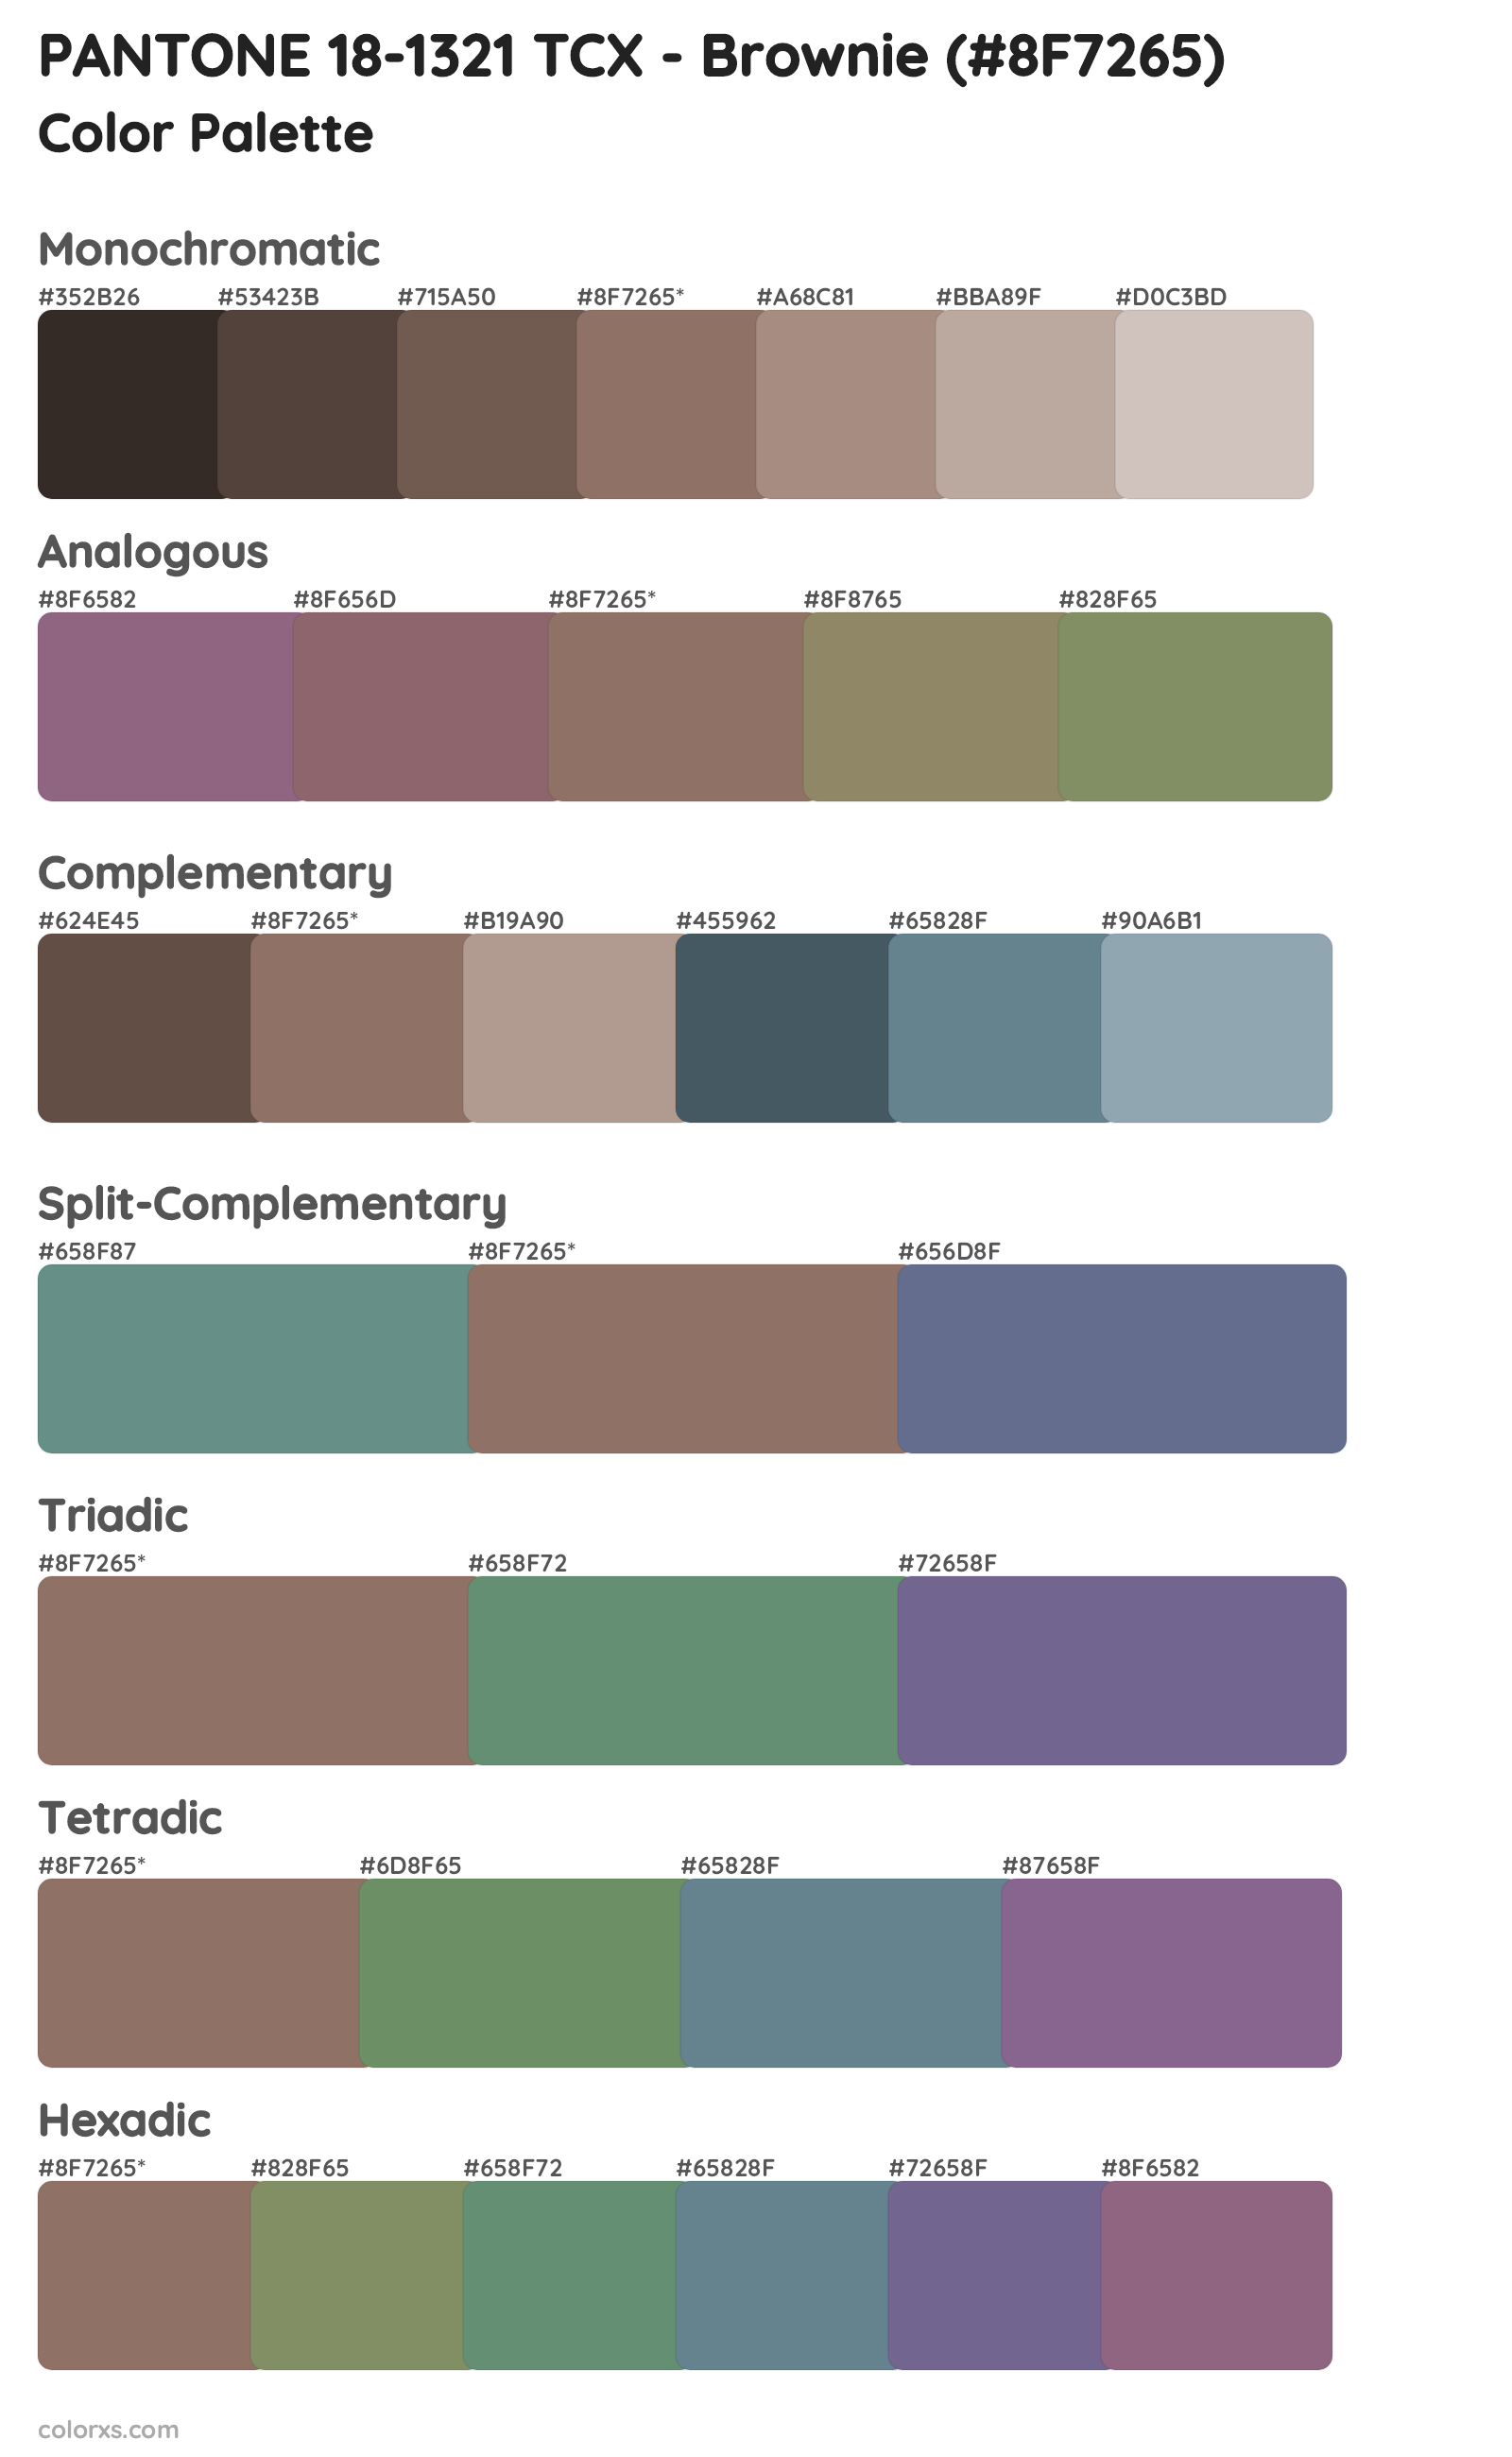 PANTONE 18-1321 TCX - Brownie Color Scheme Palettes